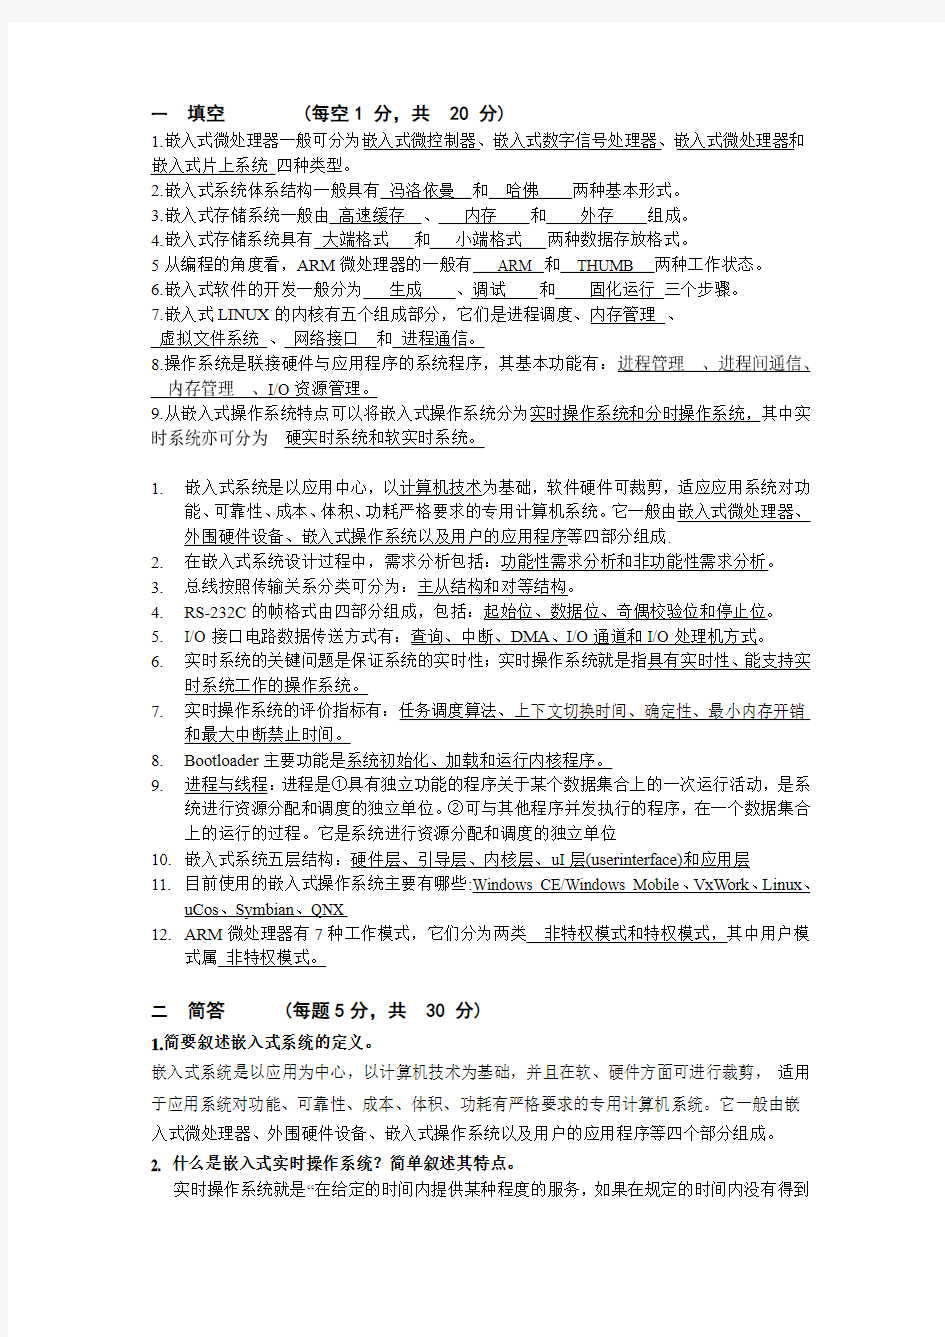 湖南大学嵌入式系统试卷.pdf